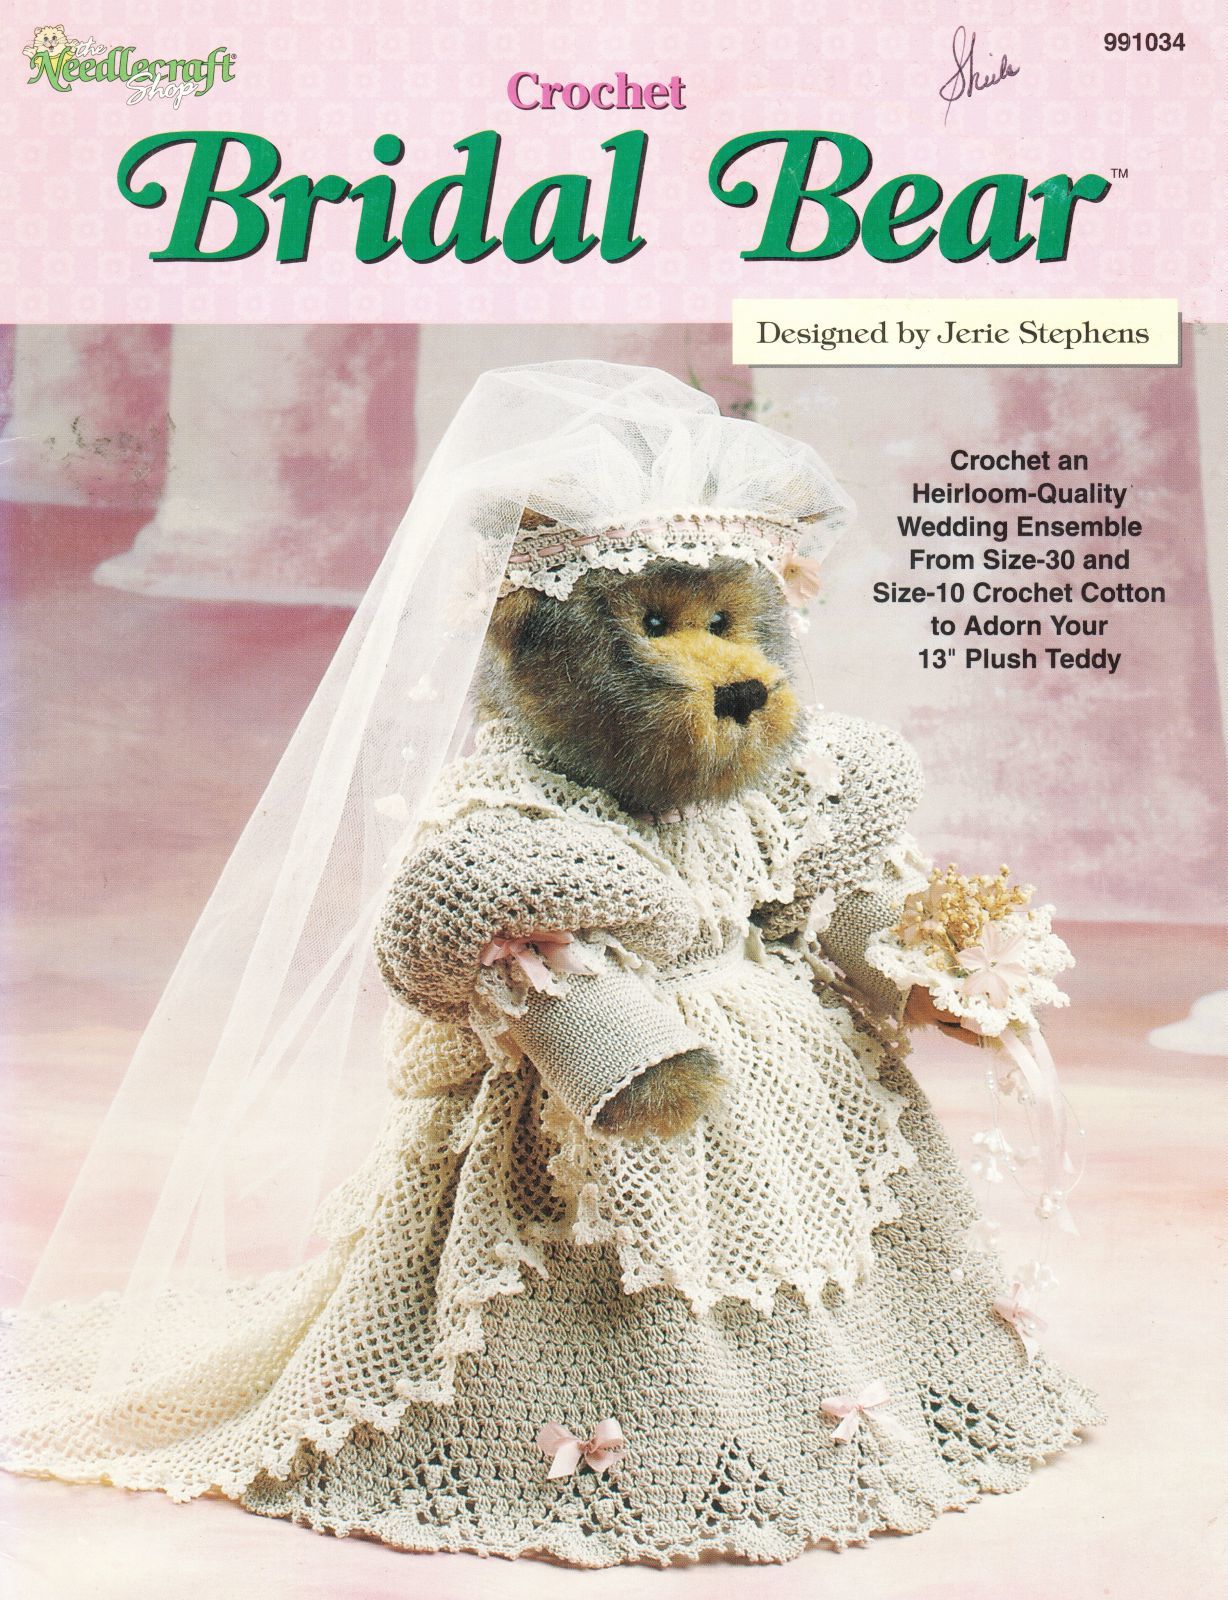 Victorian Heirloom Wedding Bridal Gown For 13" Plush Teddy Bear Crochet Pattern - $13.99